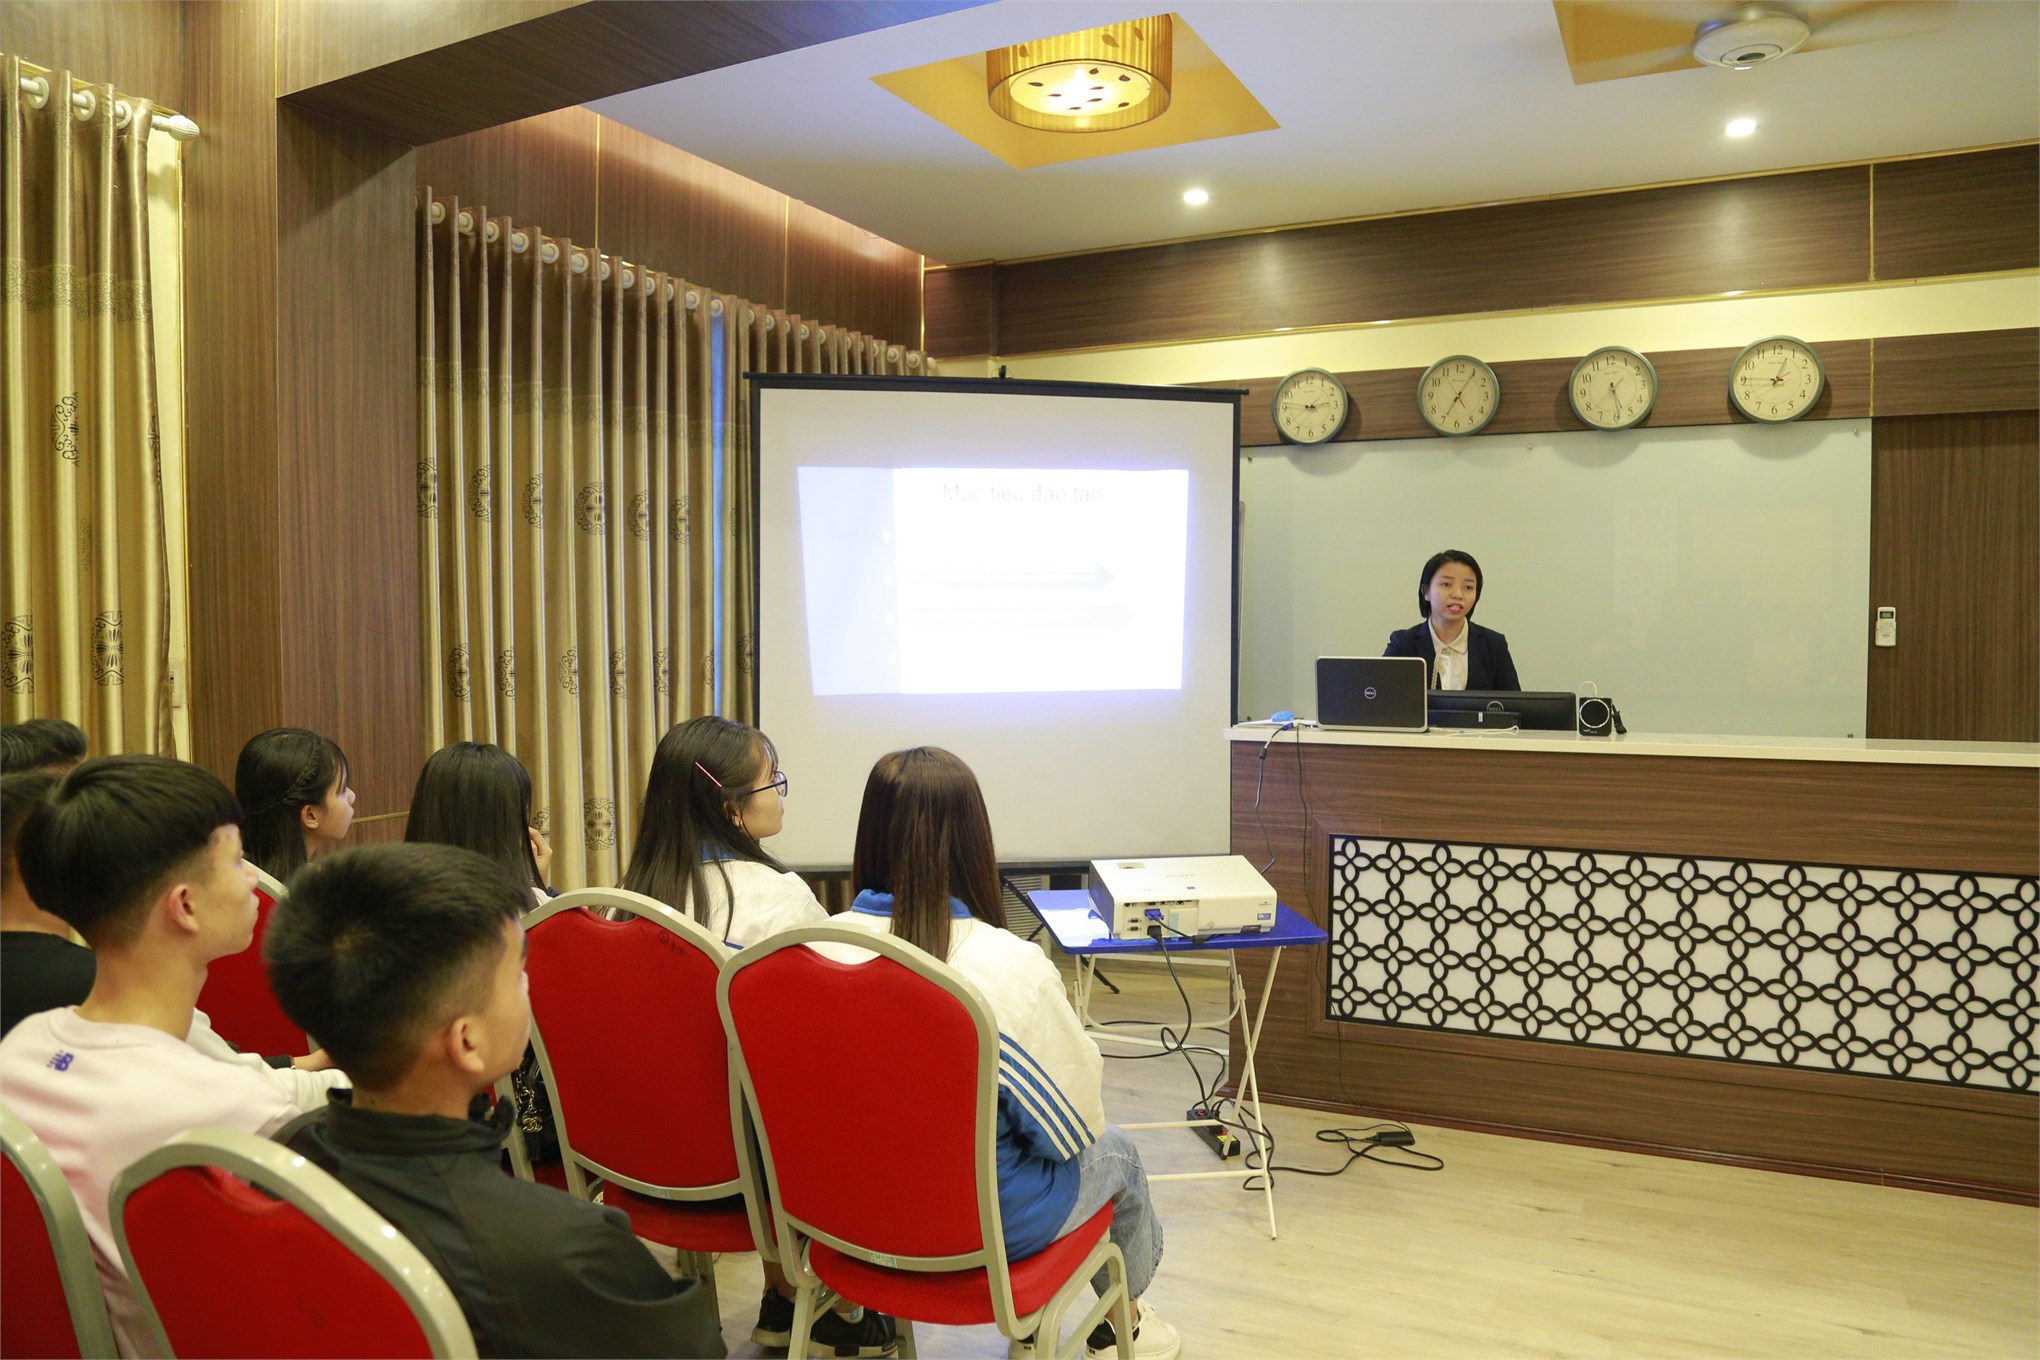 Đại học Công nghiệp Hà Nội đón gần 1000 giáo viên, phụ huynh và học sinh THPT Hoàng Hoa Thám - tỉnh Quảng Ninh đến thăm quan trường